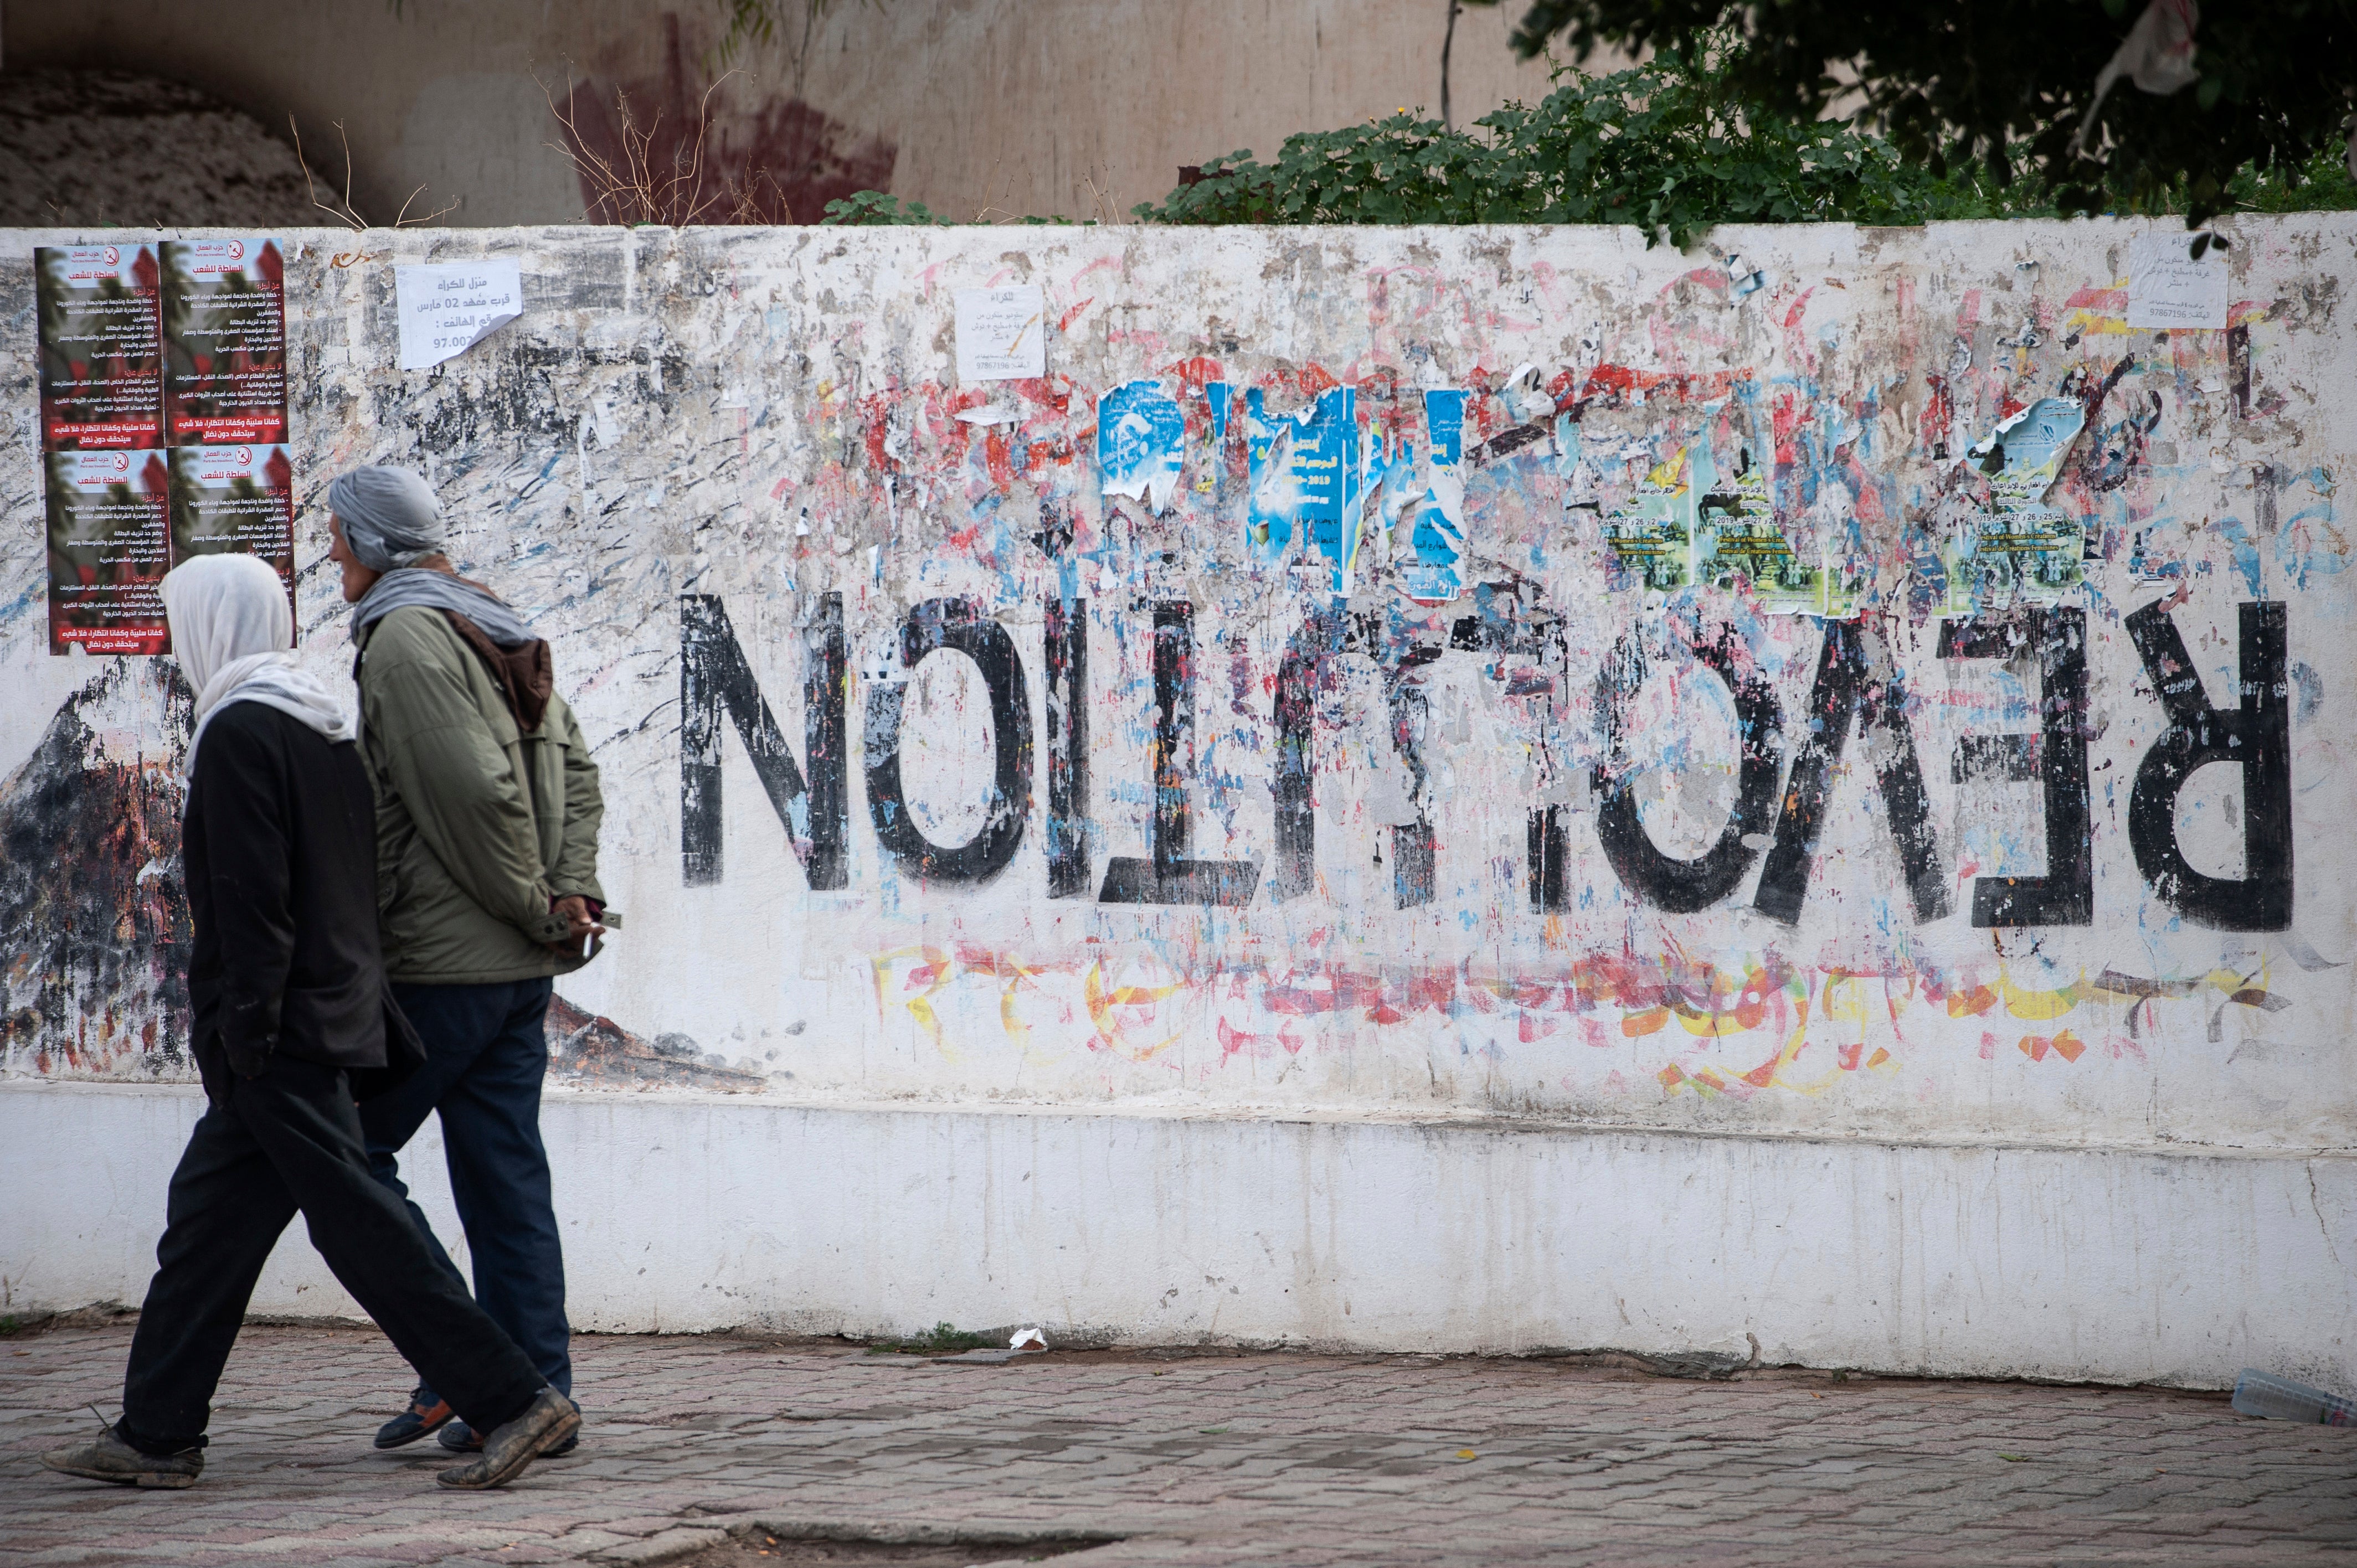 A revolution turned upside down. Graffiti in Sidi Bouzid, central Tunisia